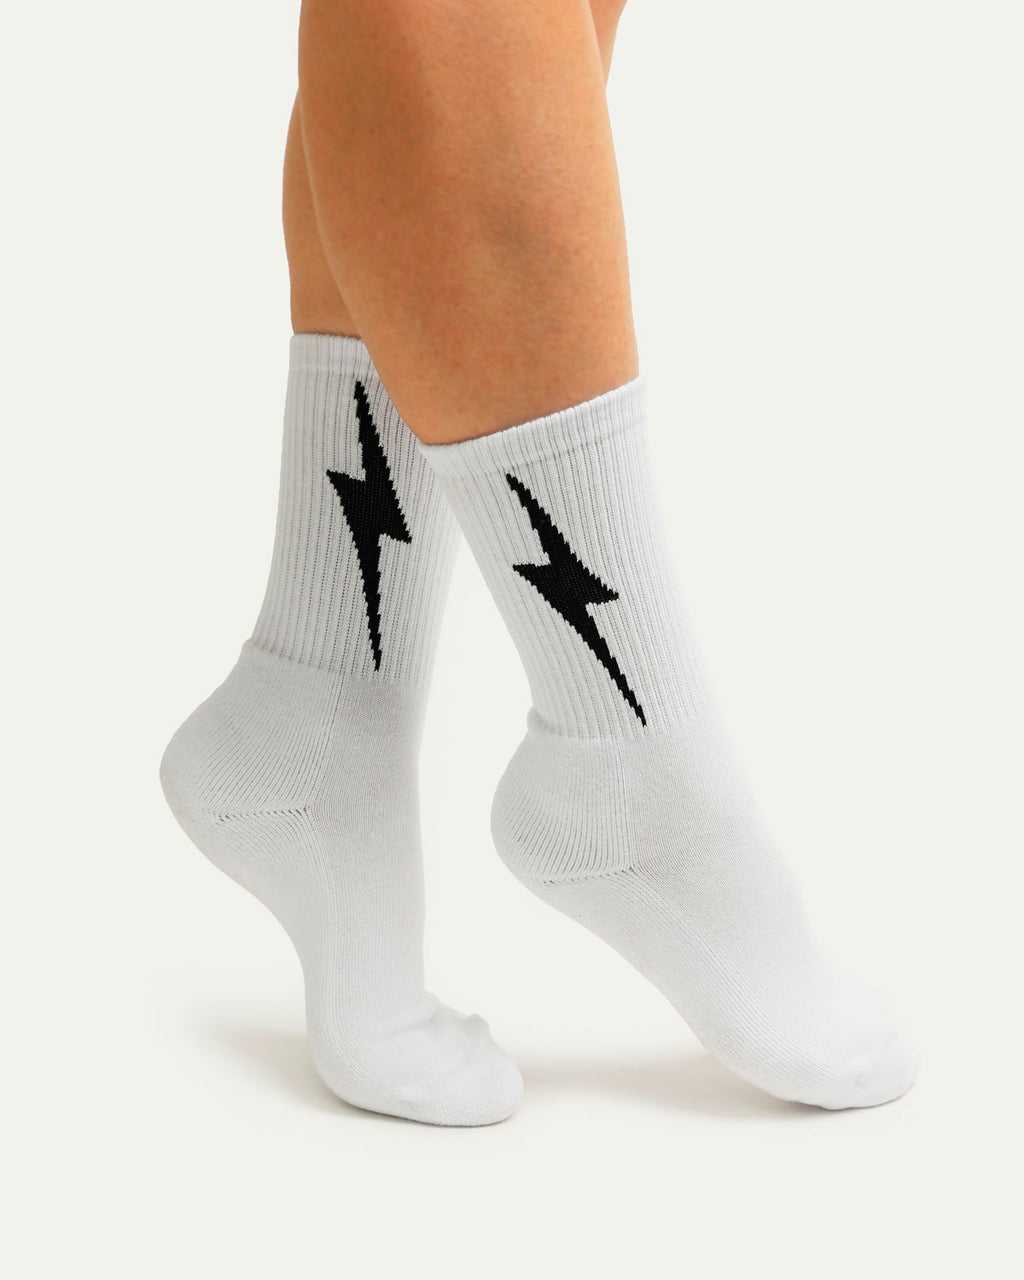 HIGH Socks White with Black Bolt